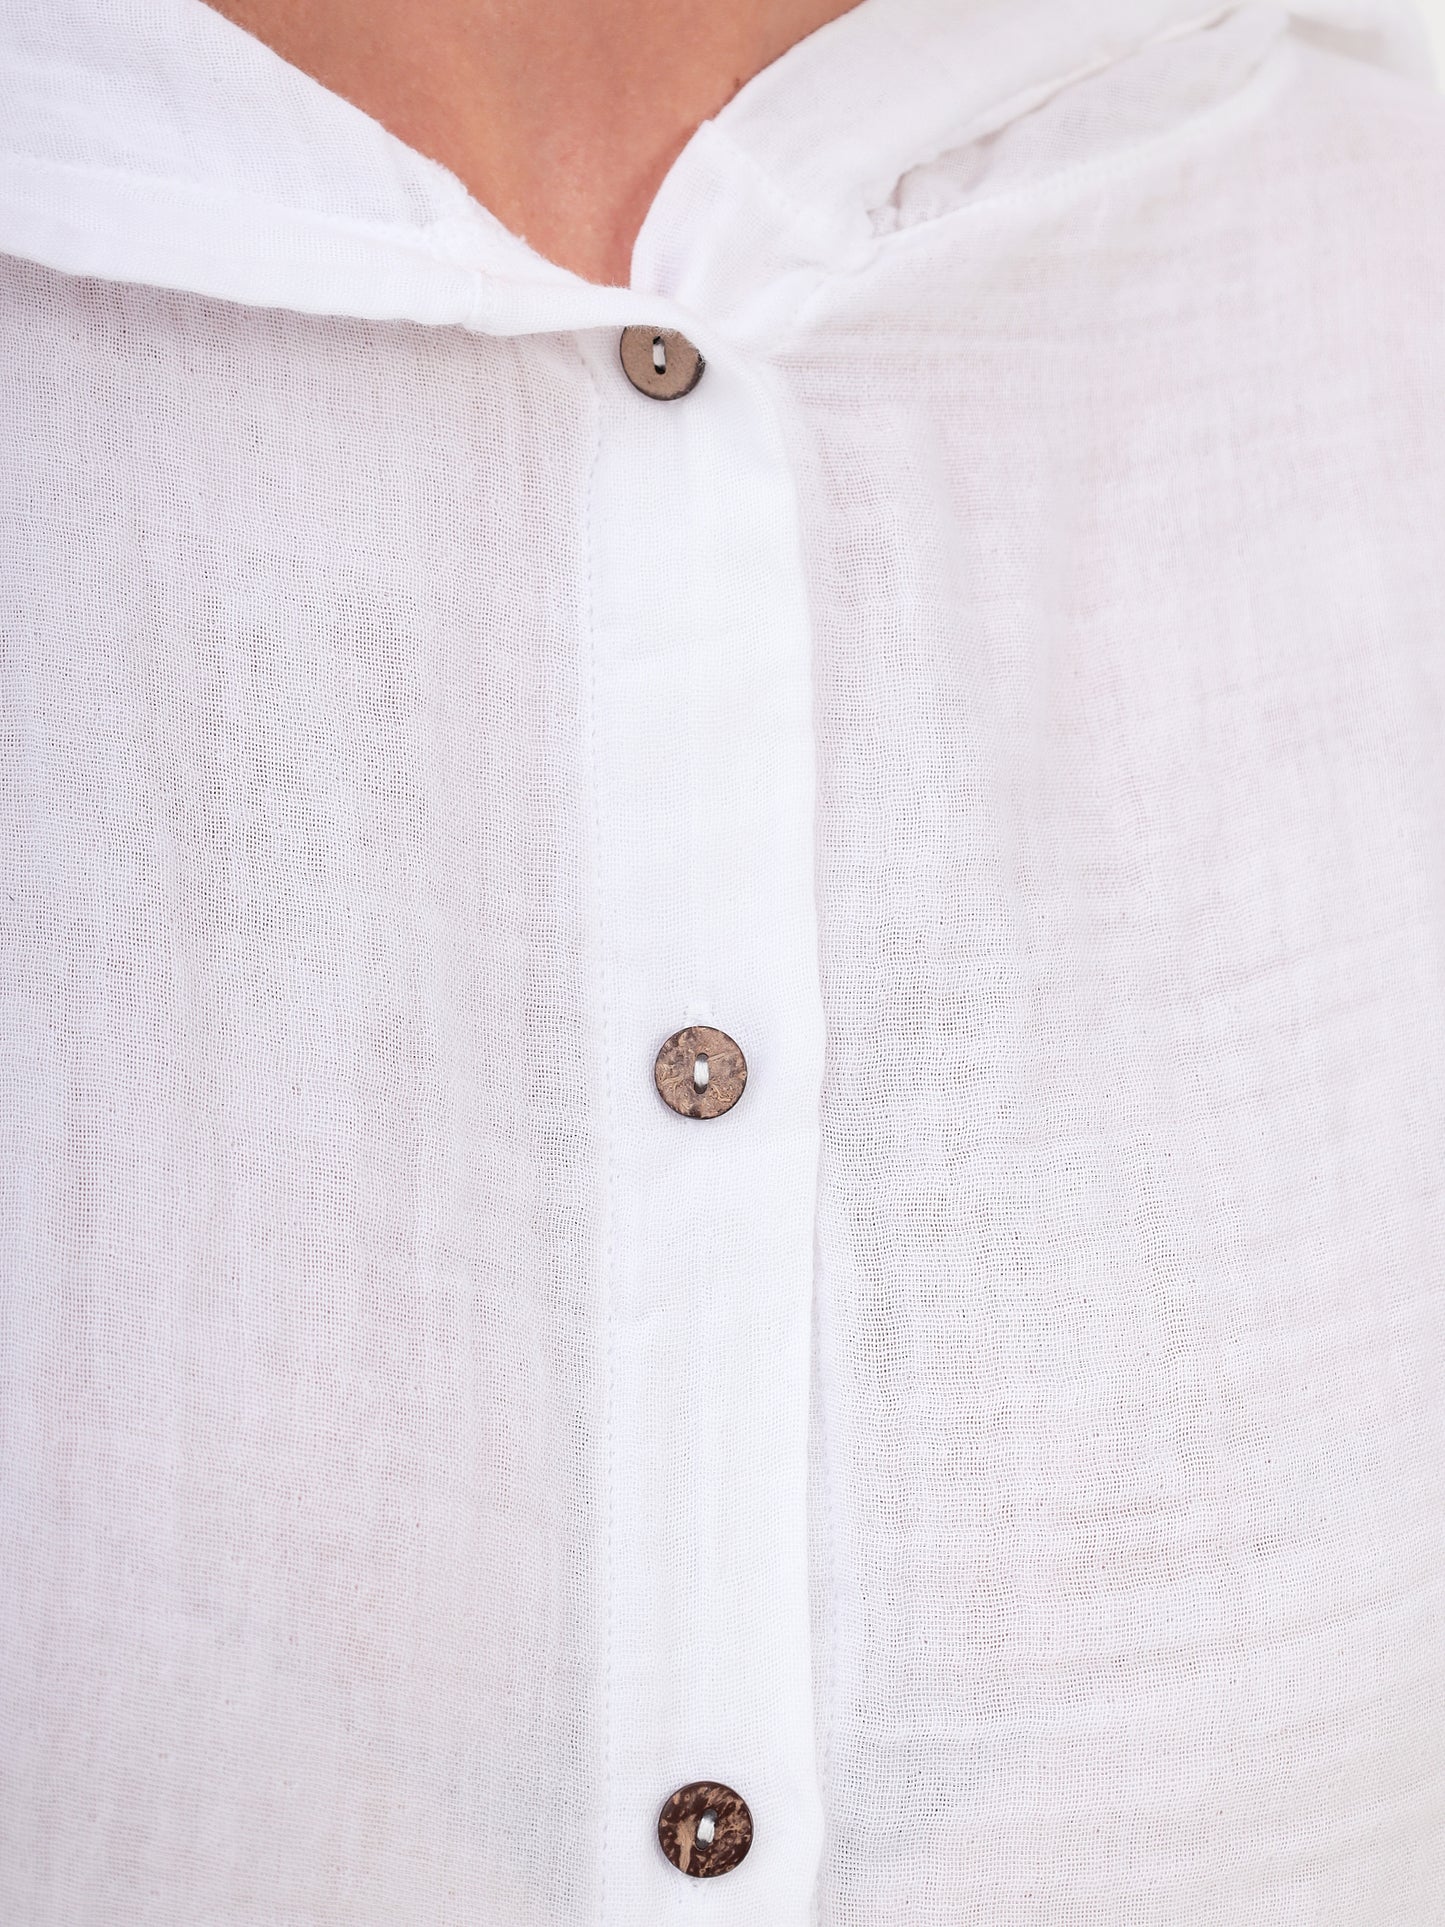 Damen Sommer Mode Hemd mit Kapuze aus lässige Musselin Freizeit LMS-6468 White Weiß